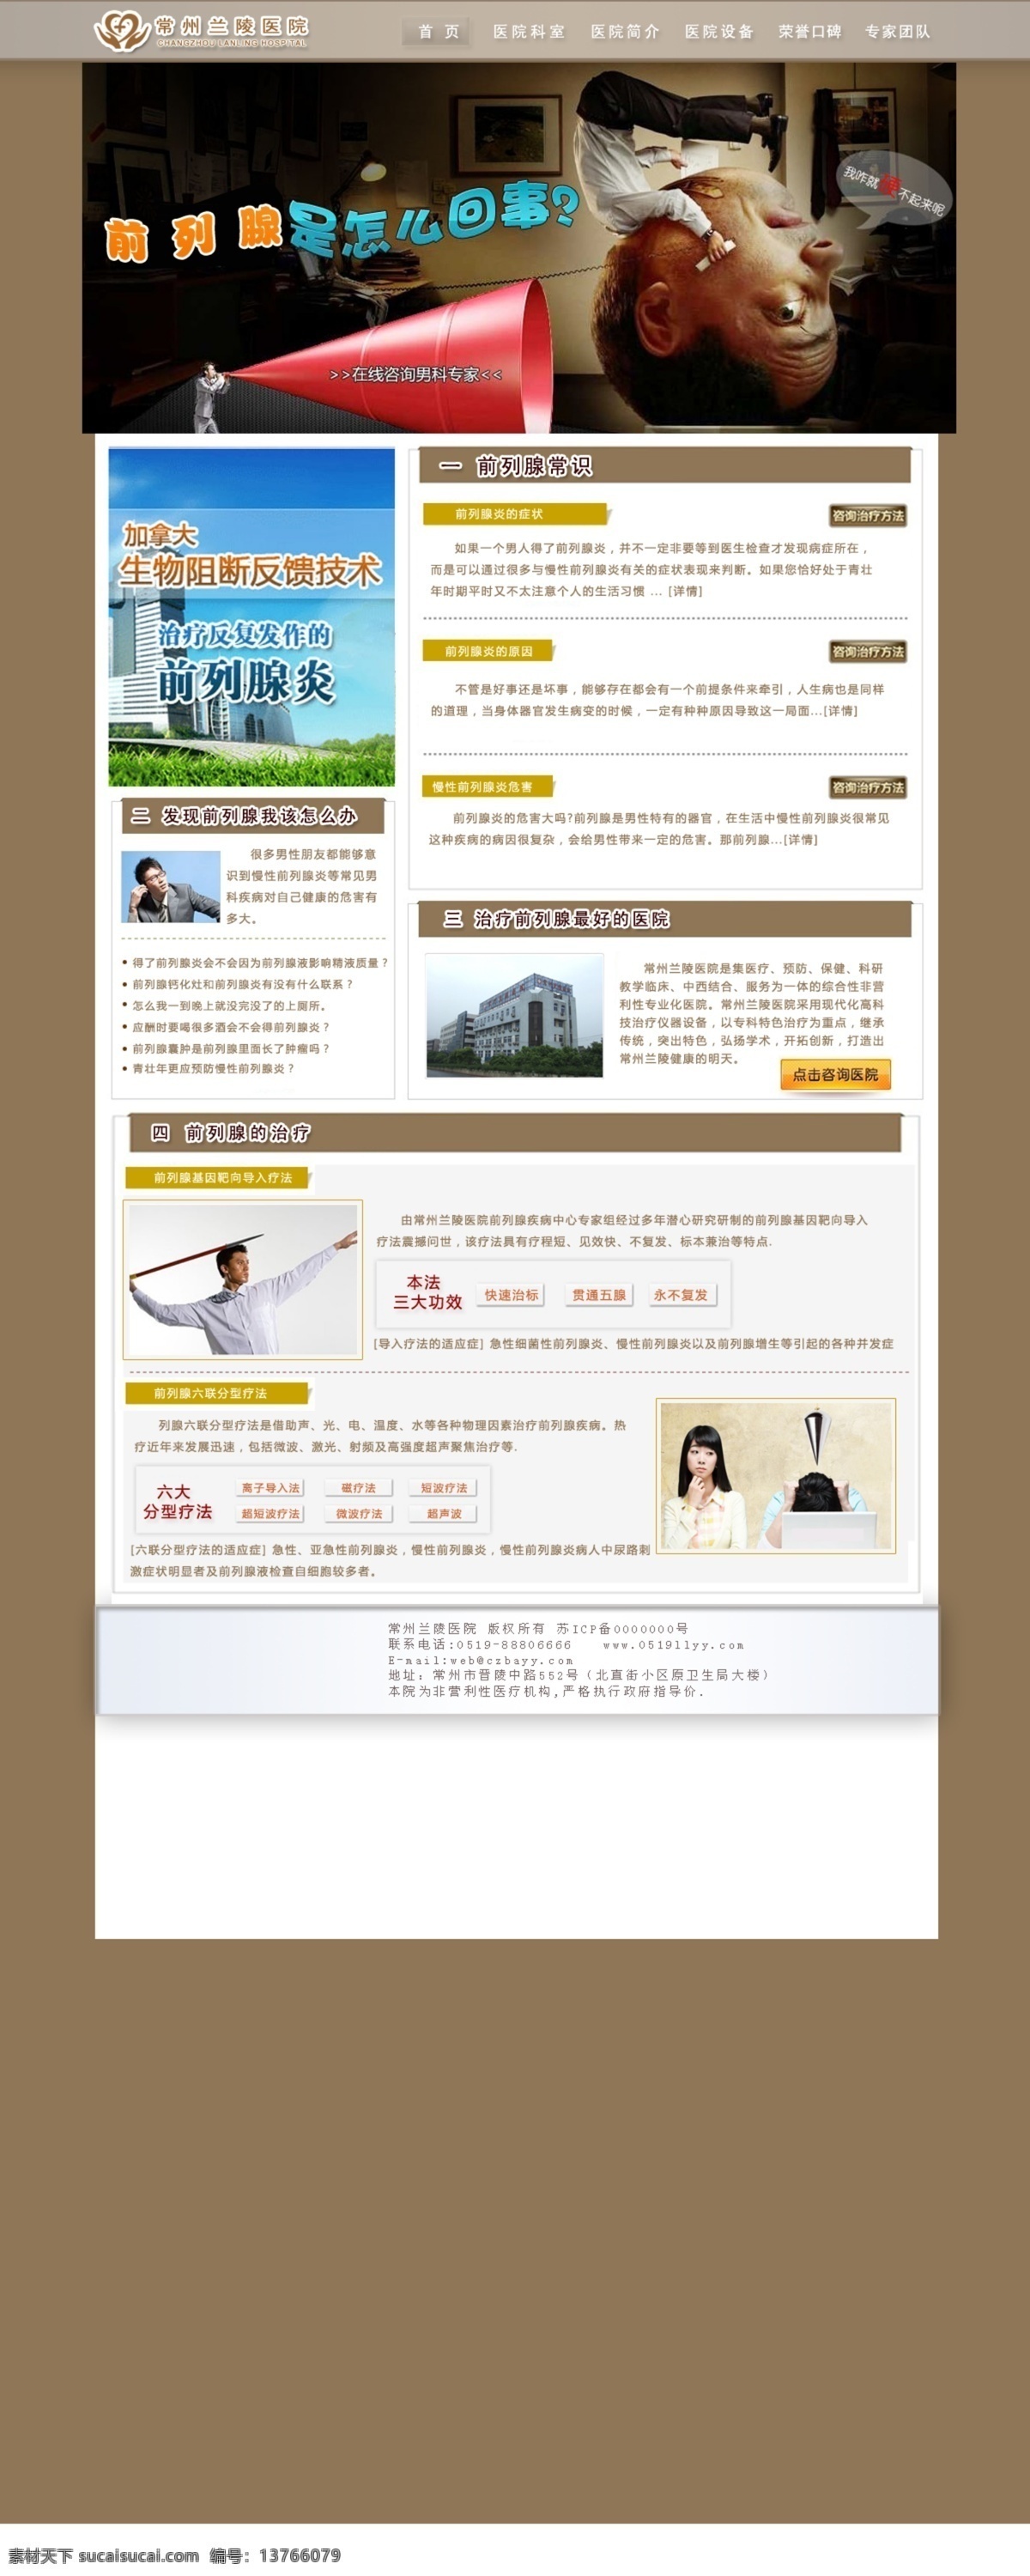 前列腺专题 前列腺 男科 灰色背景 专题 中文模版 网页模板 源文件